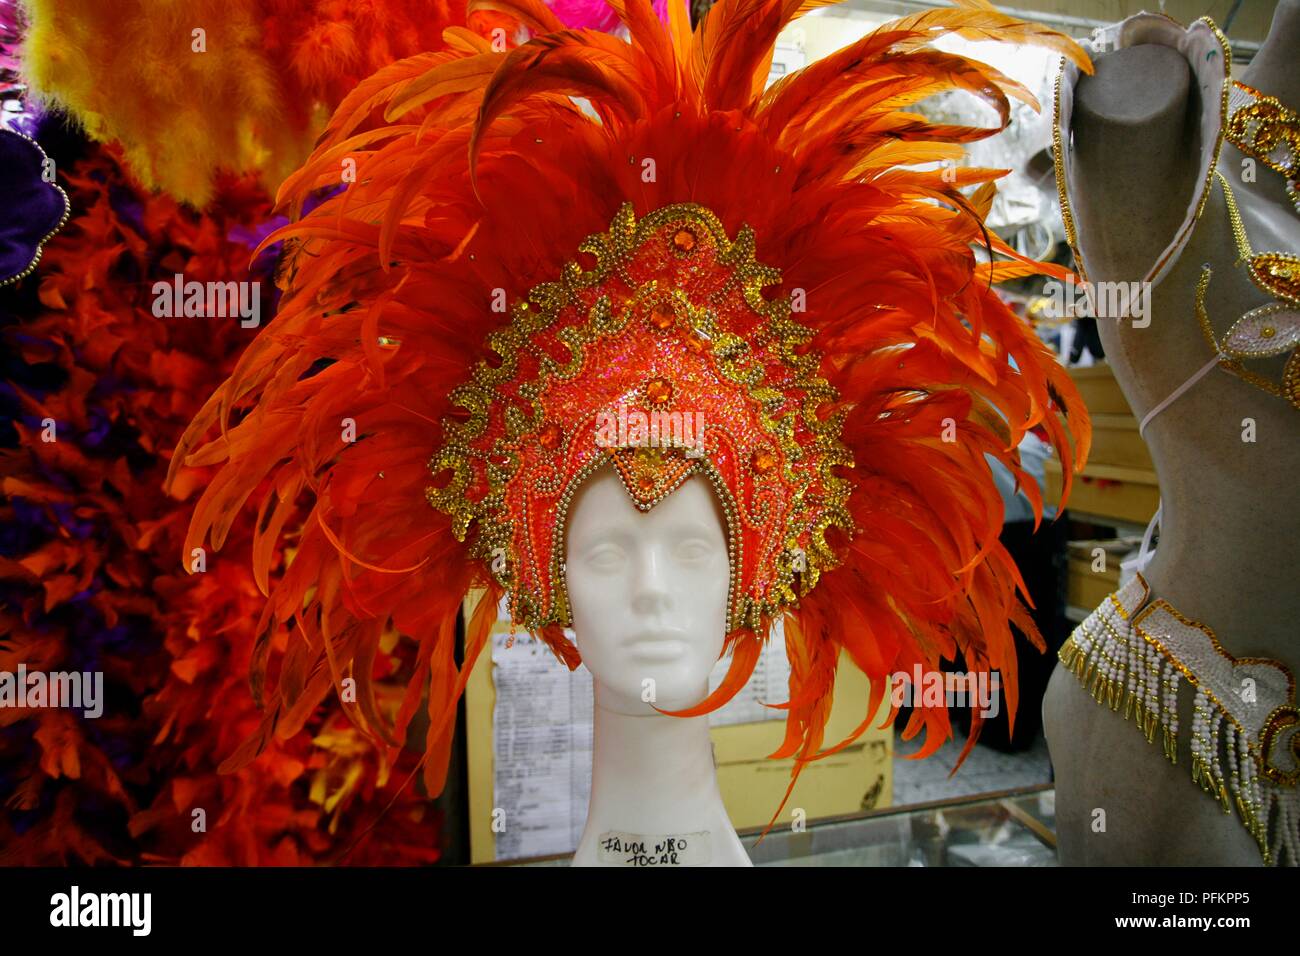 Brazilian Carnival Headdress - Cowley Road Works